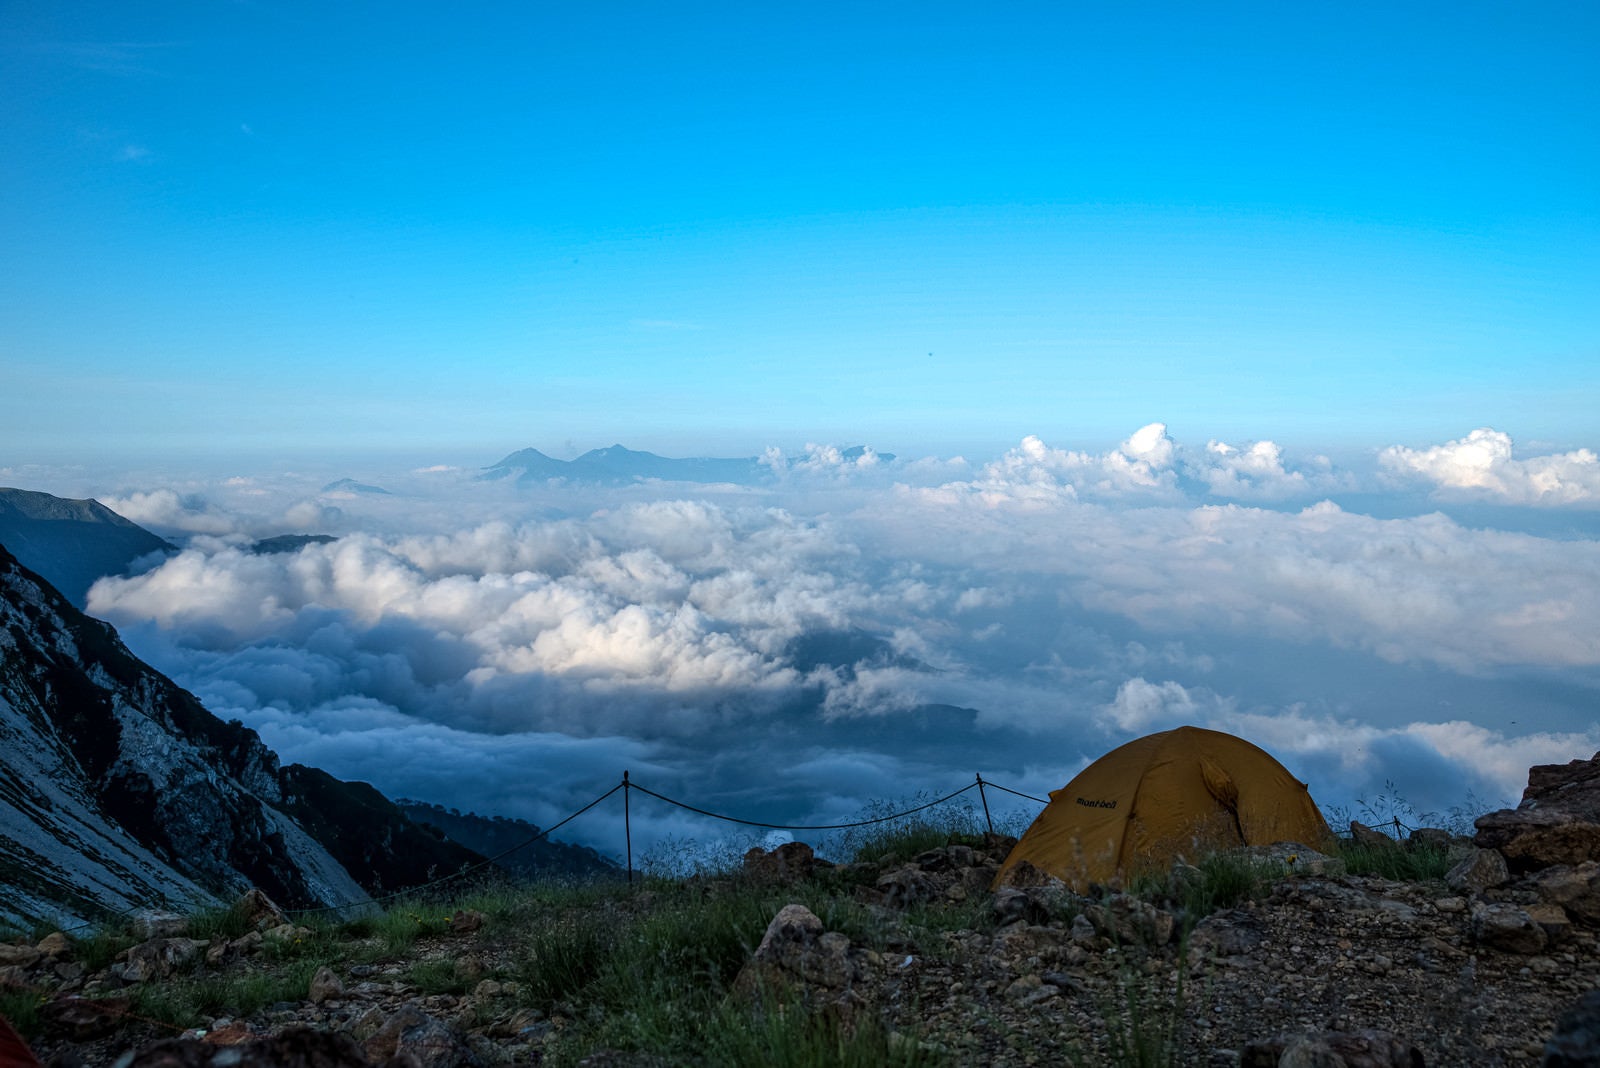 「テントと目の前に広がる雲海の様子」の写真